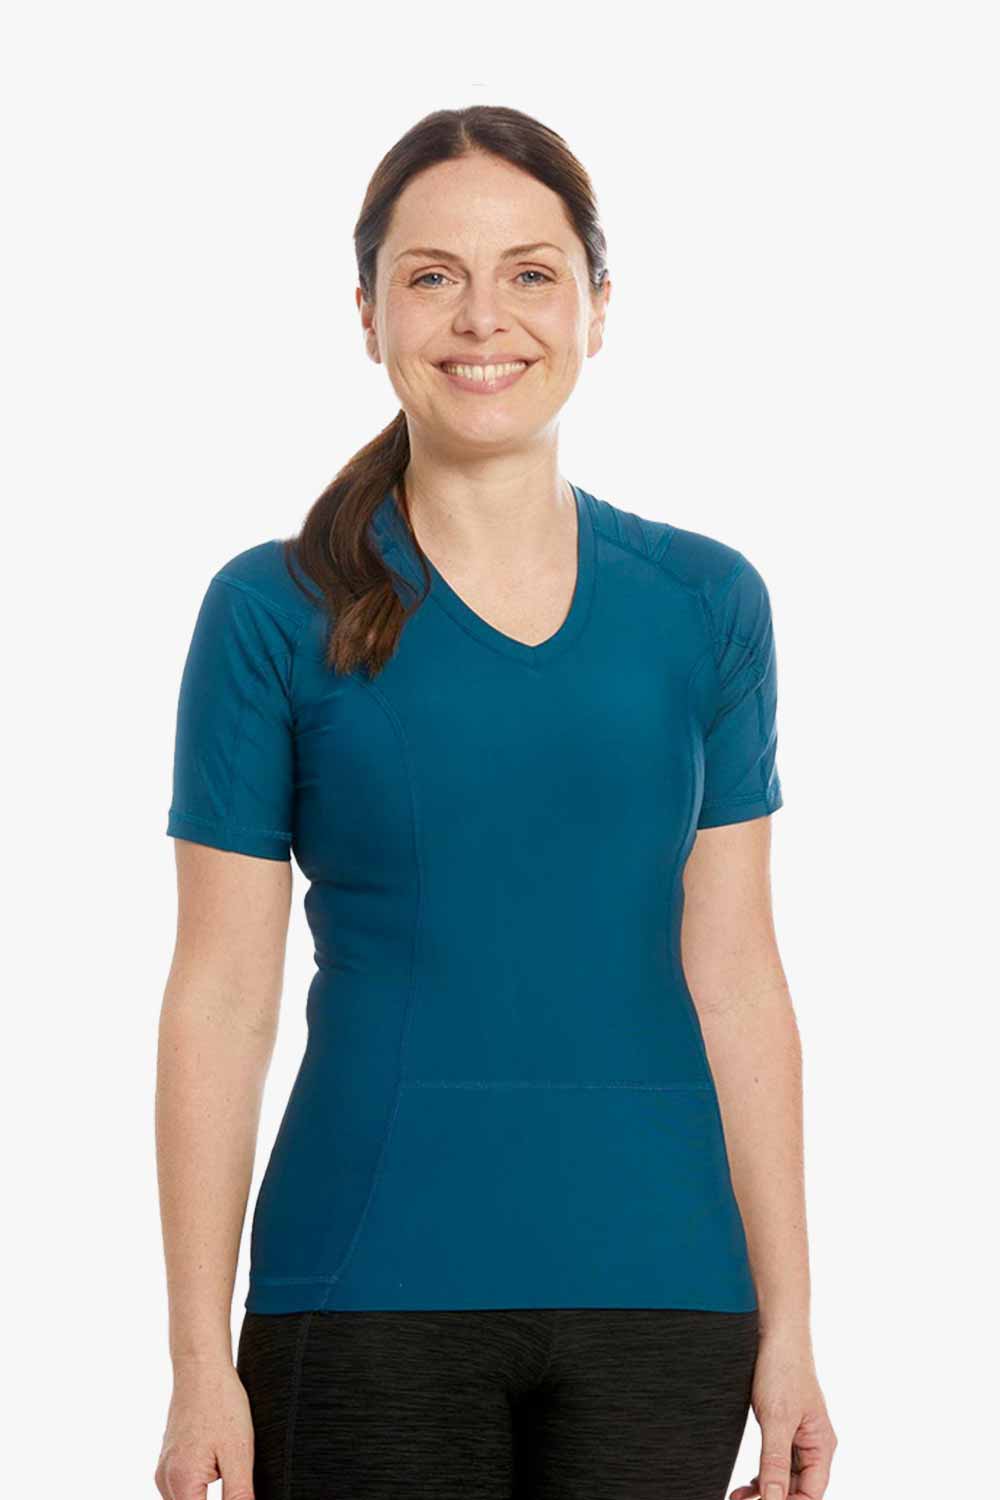 Women's Posture Shirt™ - Bleu